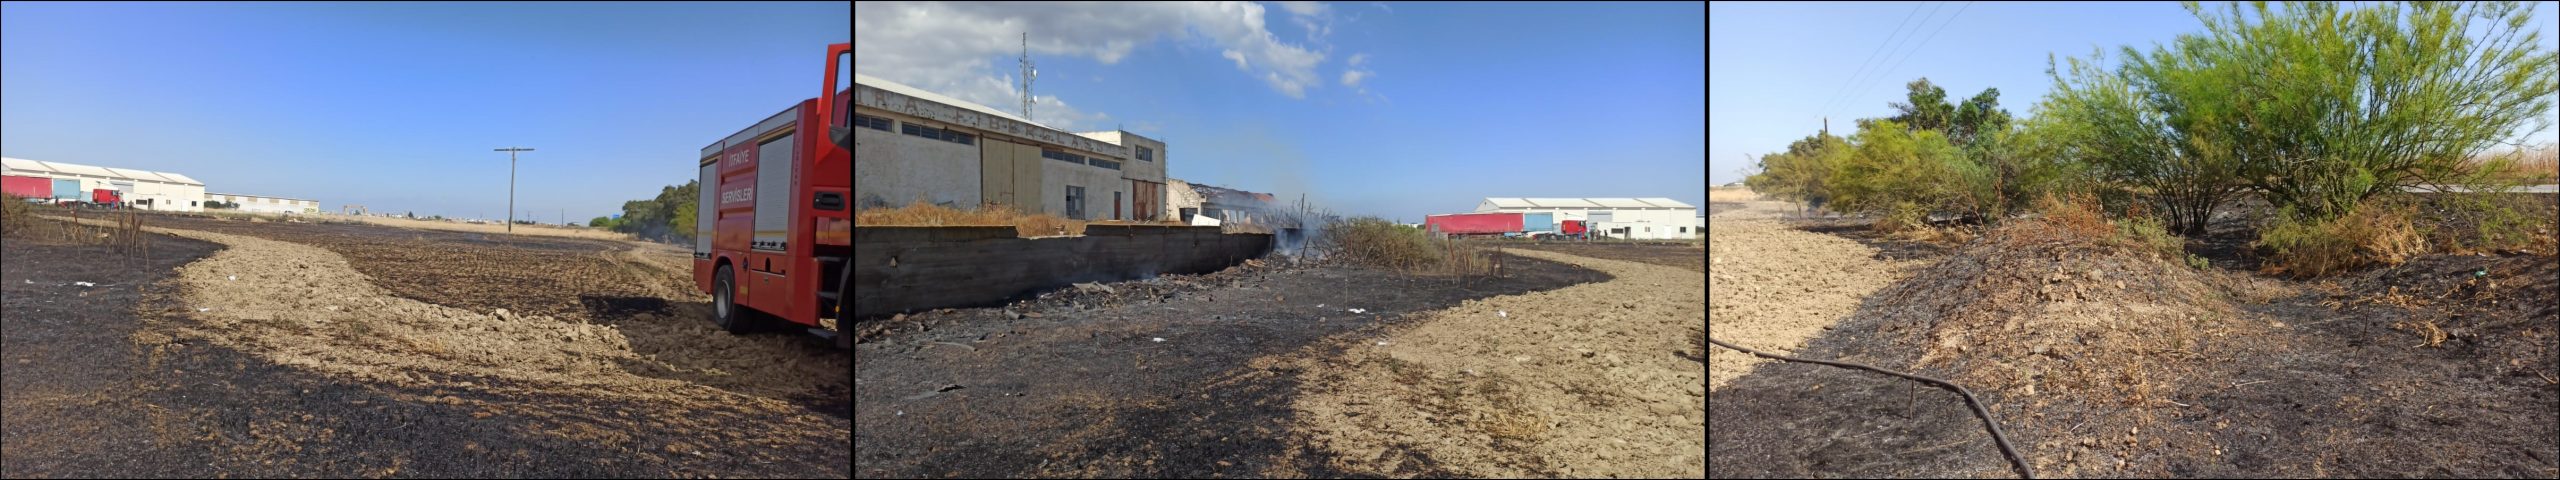 Gazimağusa’da Saklıkent bölgesinde yangın